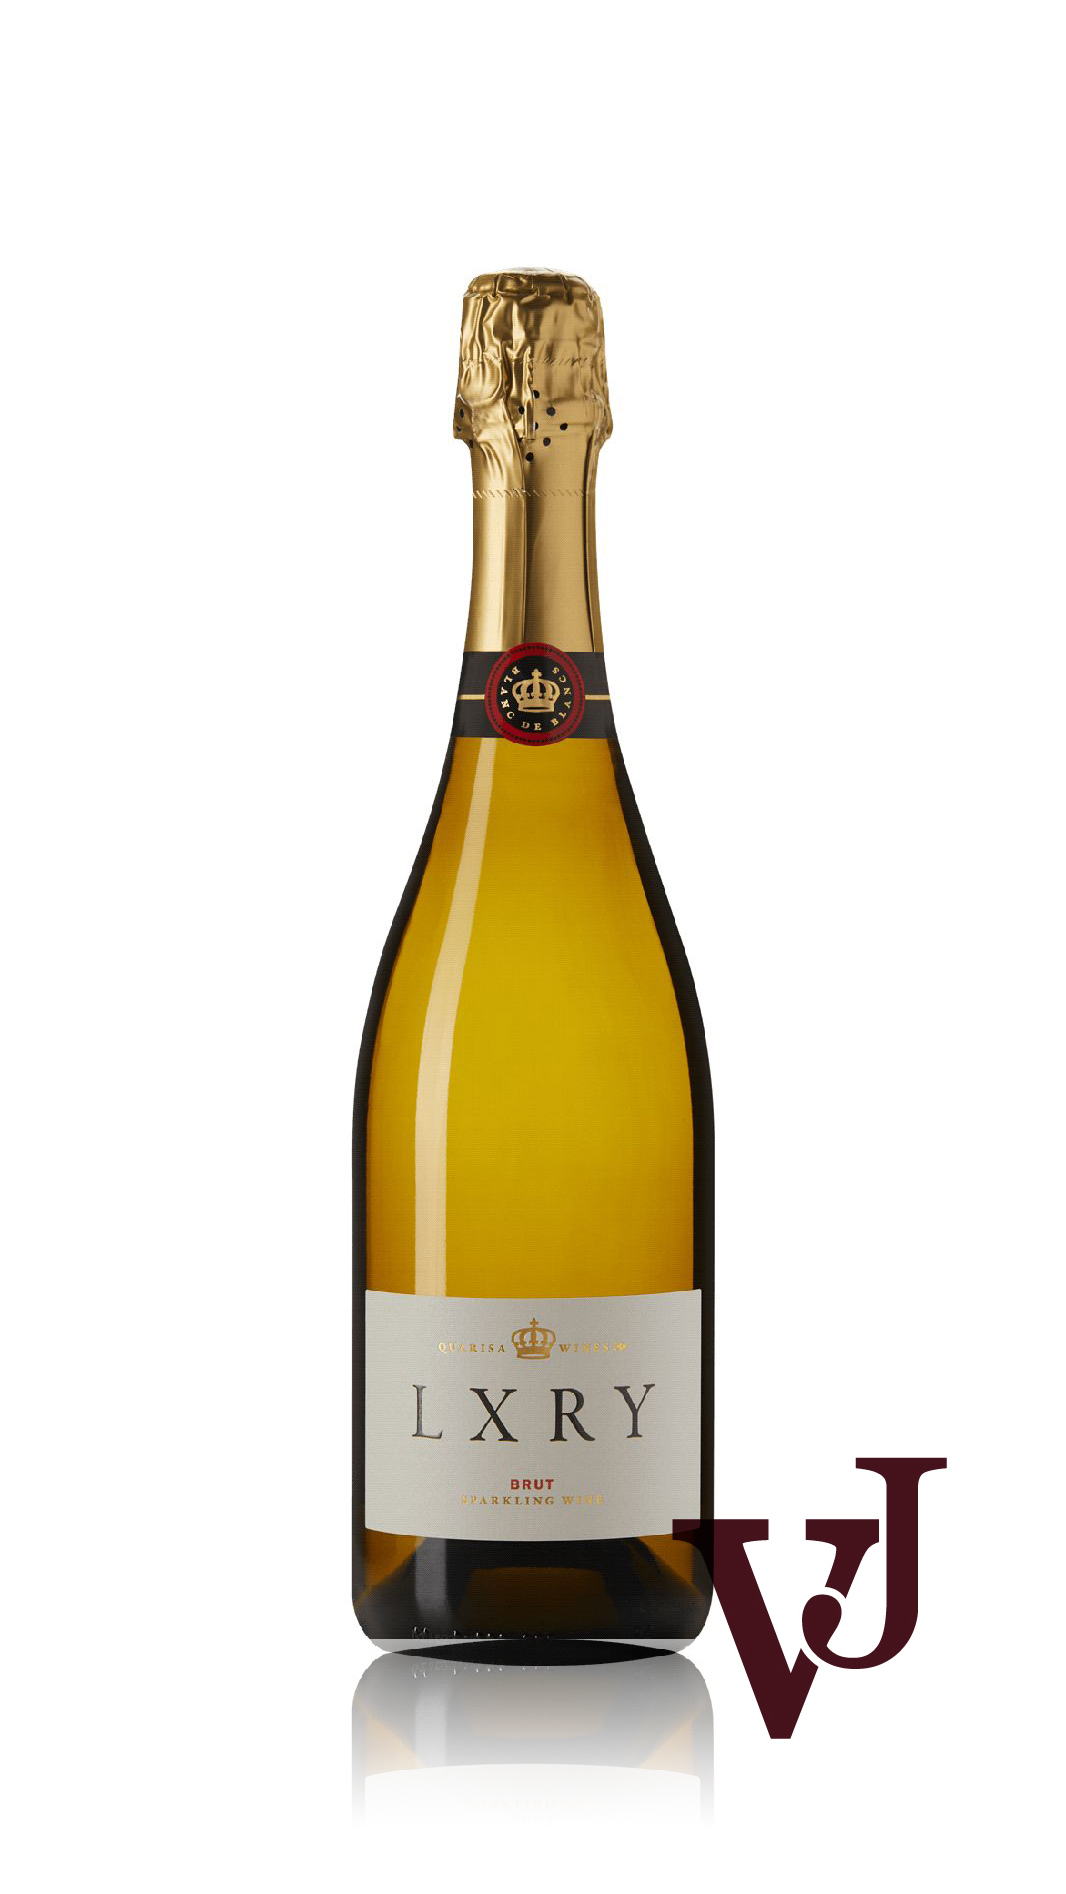 Mousserande Vin - LXRY Sparkling artikel nummer 740801 från producenten Quarisa Wines från Australien.